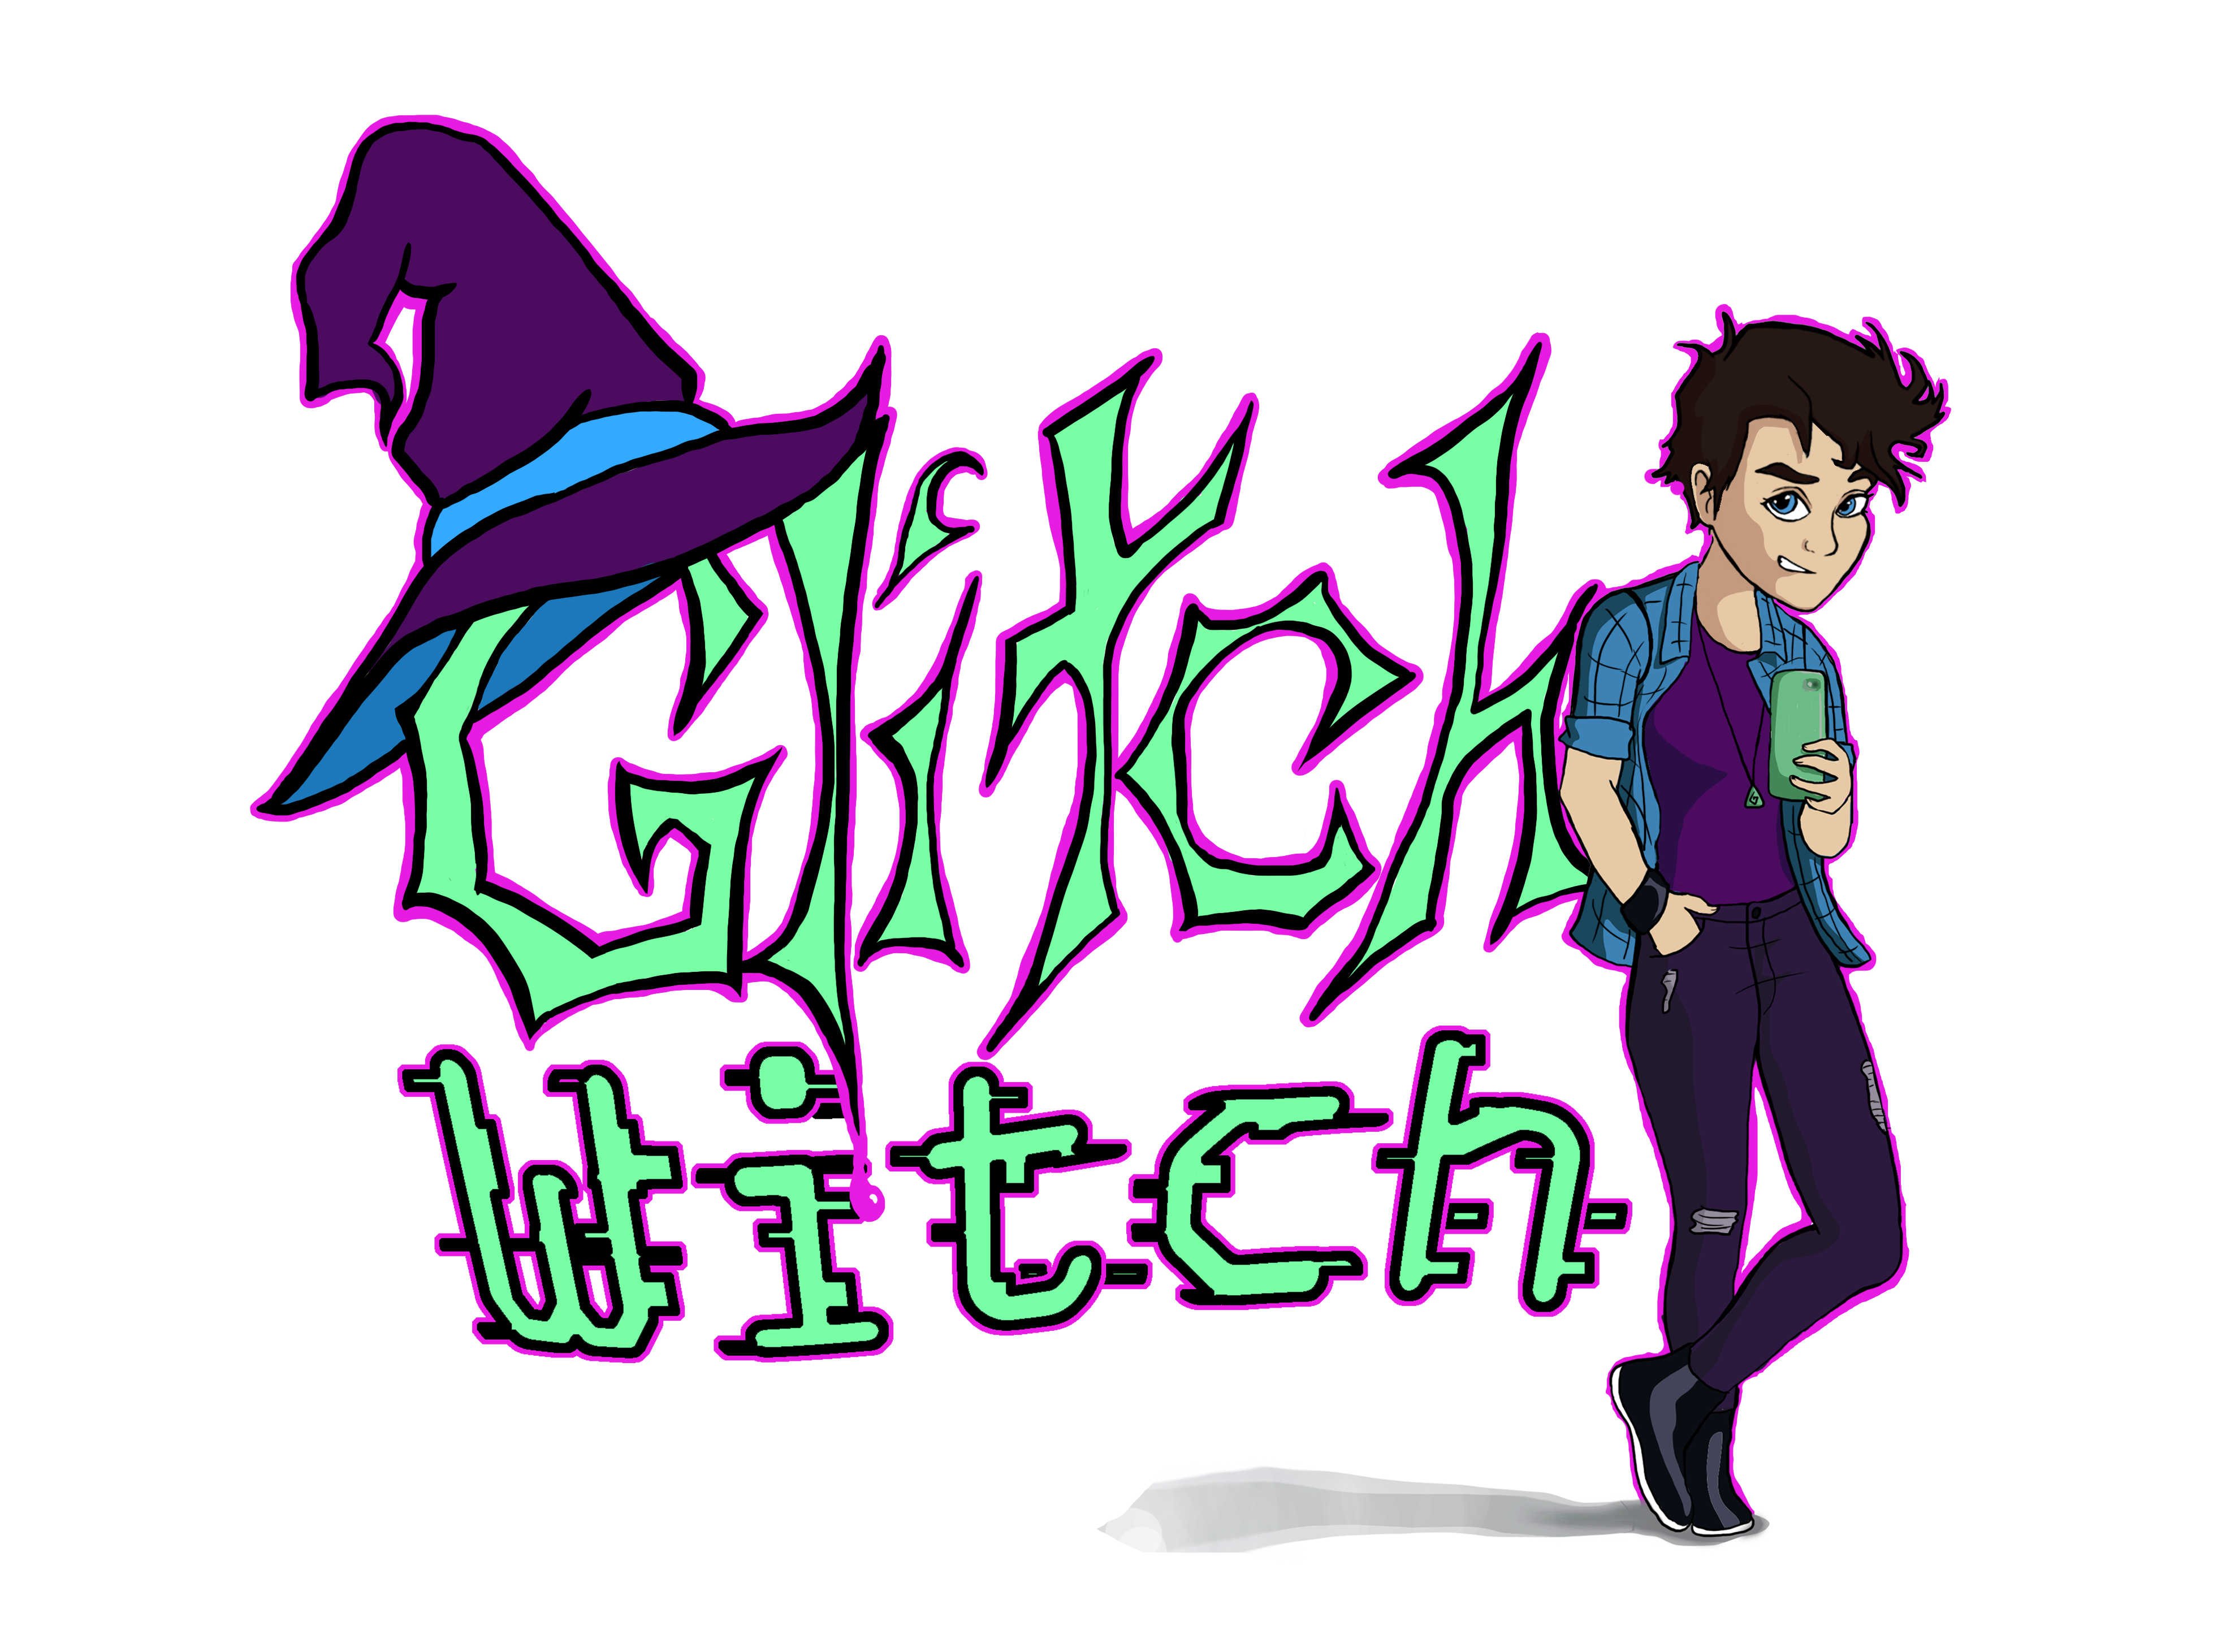 Glitch Witch Logo